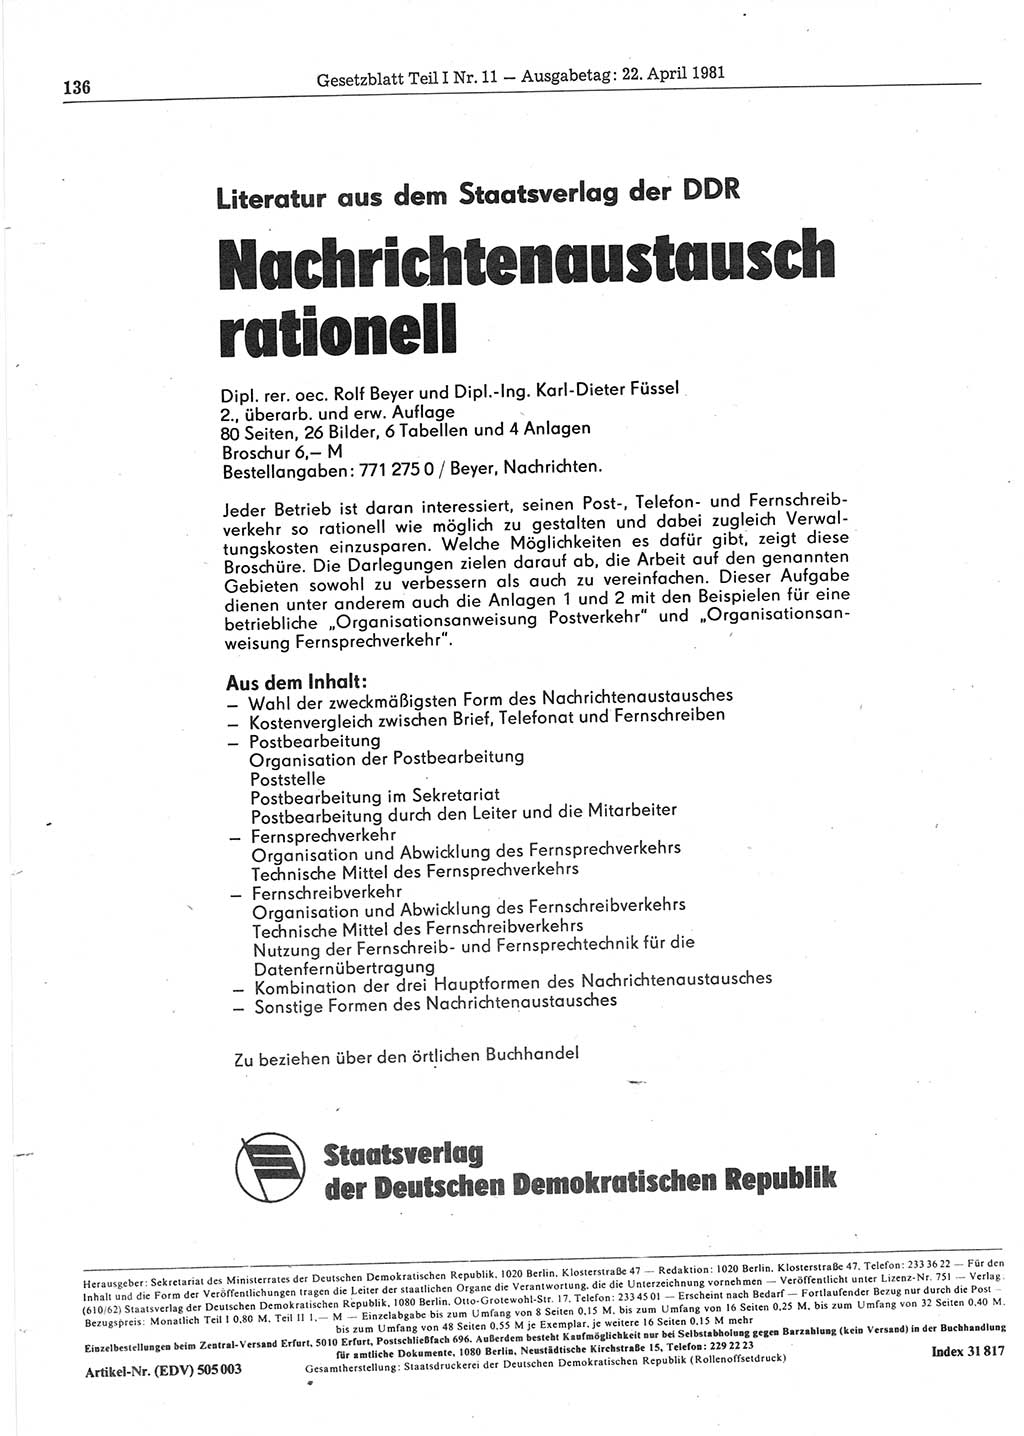 Gesetzblatt (GBl.) der Deutschen Demokratischen Republik (DDR) Teil Ⅰ 1981, Seite 136 (GBl. DDR Ⅰ 1981, S. 136)